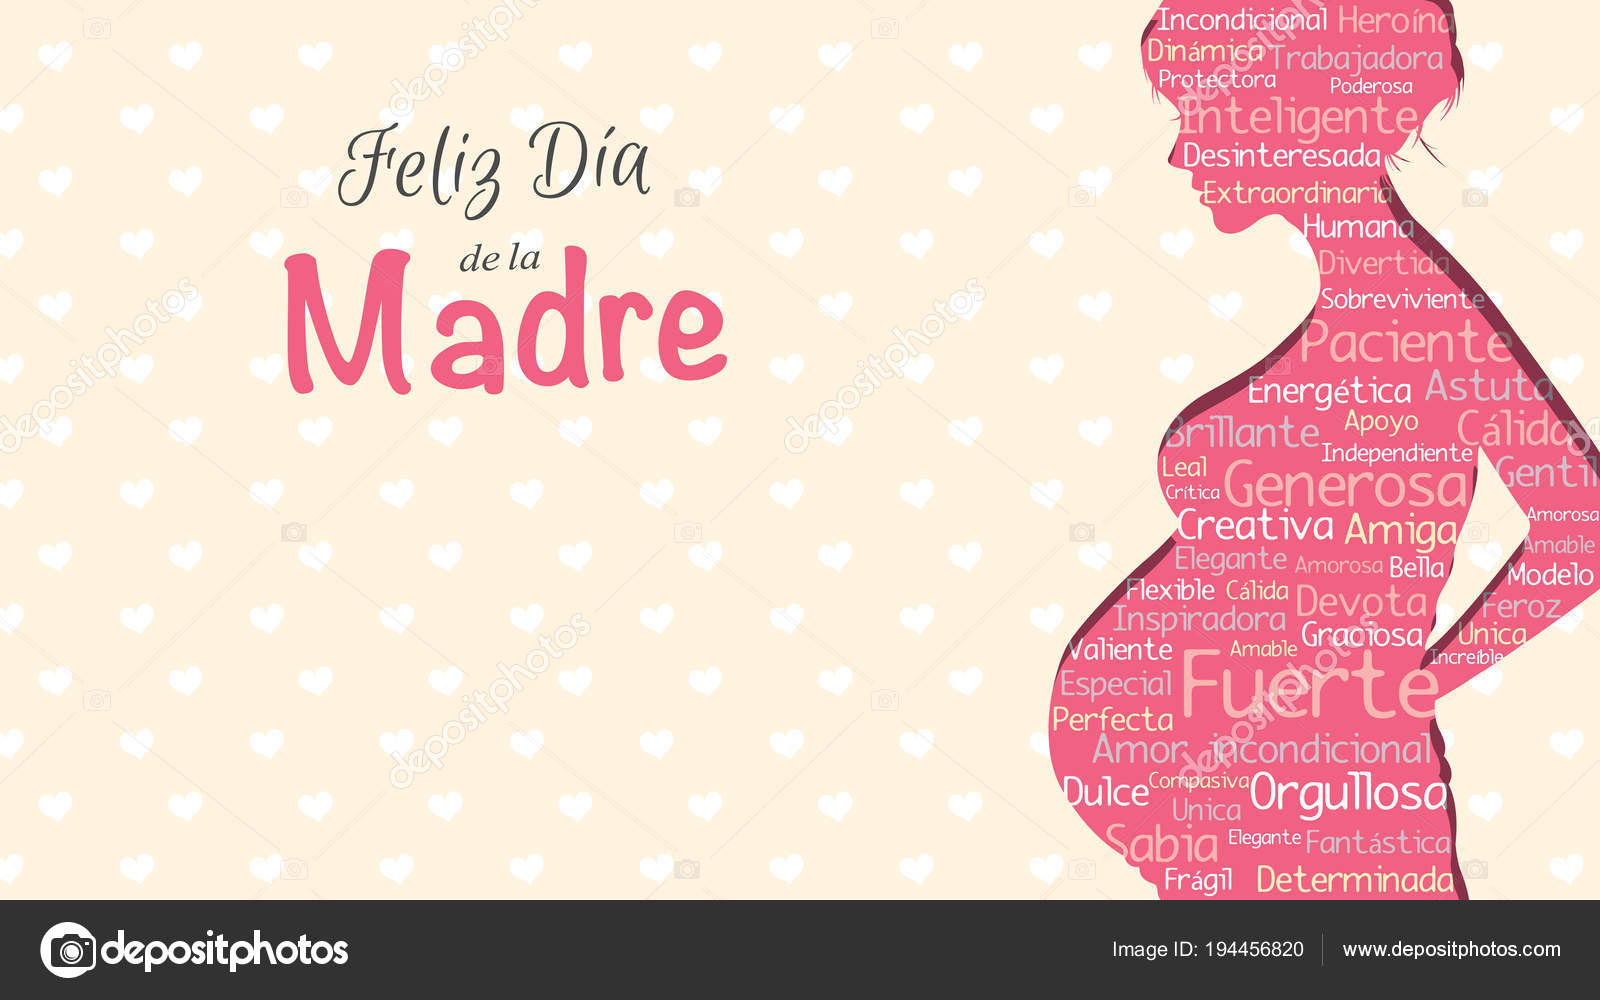 Feliz Dia De Las Madres Lettering Design Vector Download